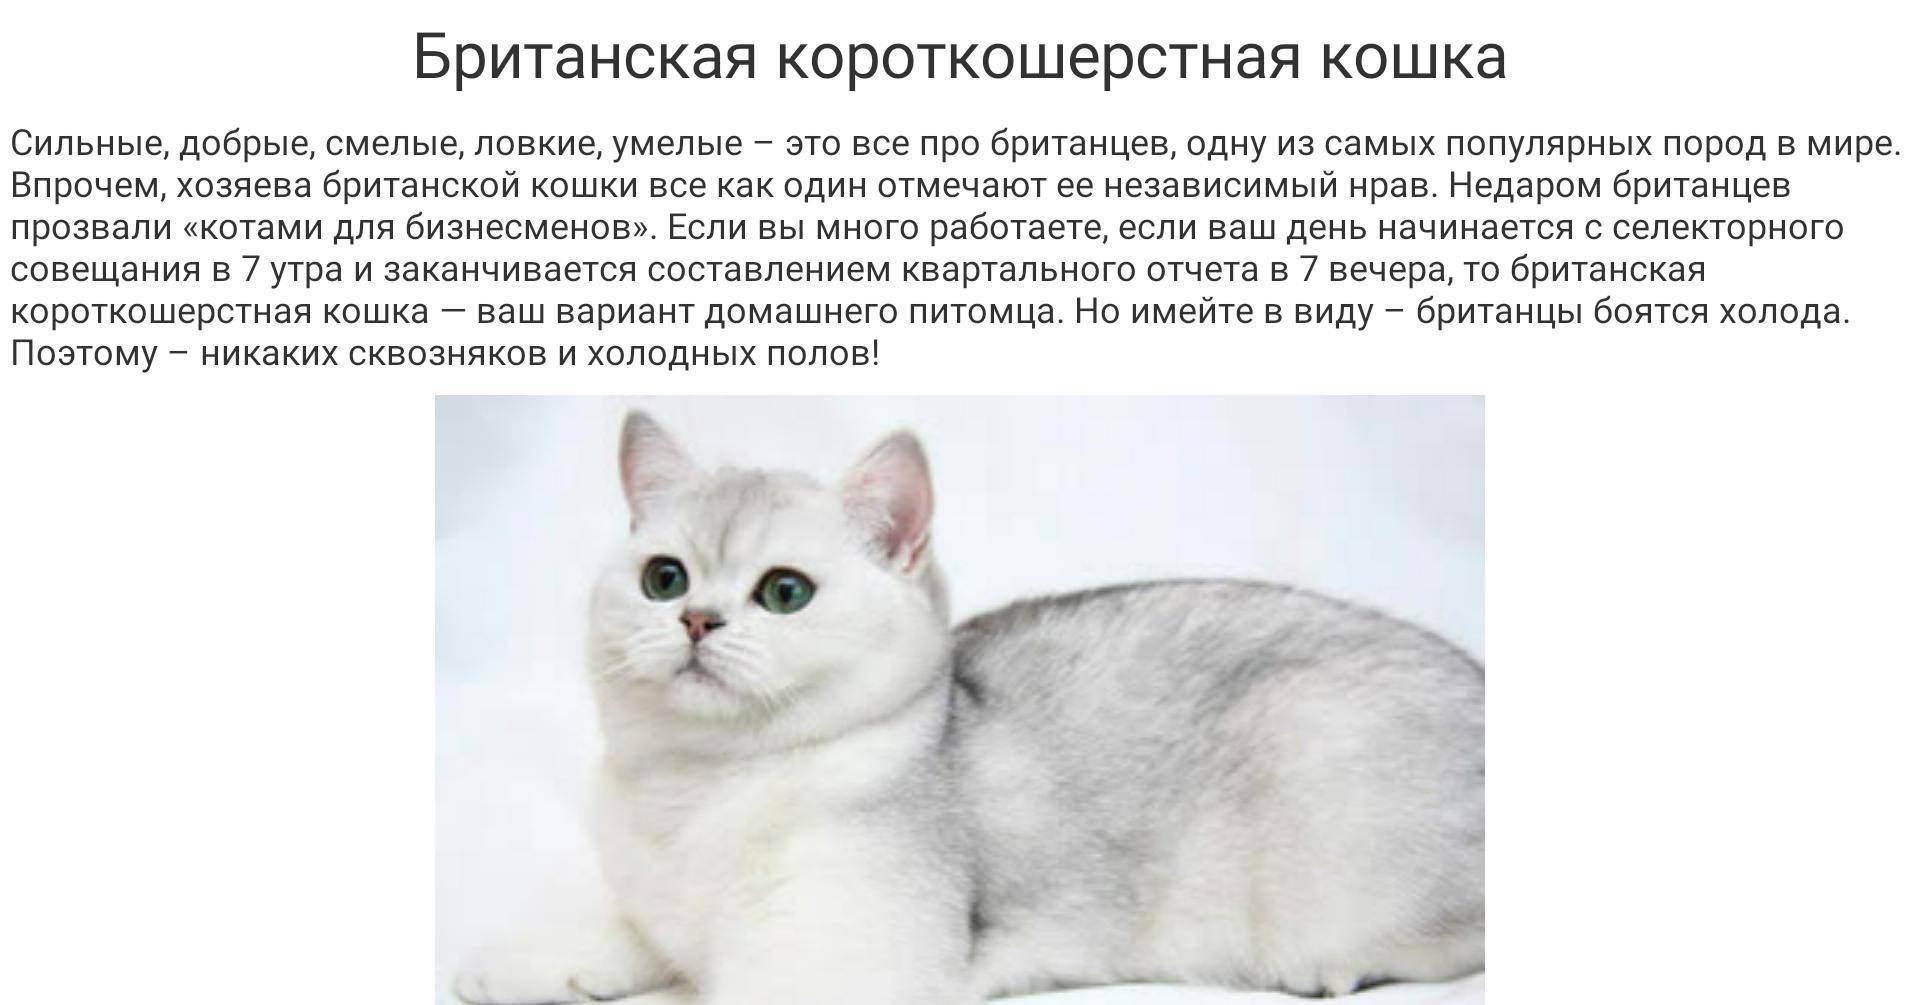 Кошка бурмилла: описание породы и характера